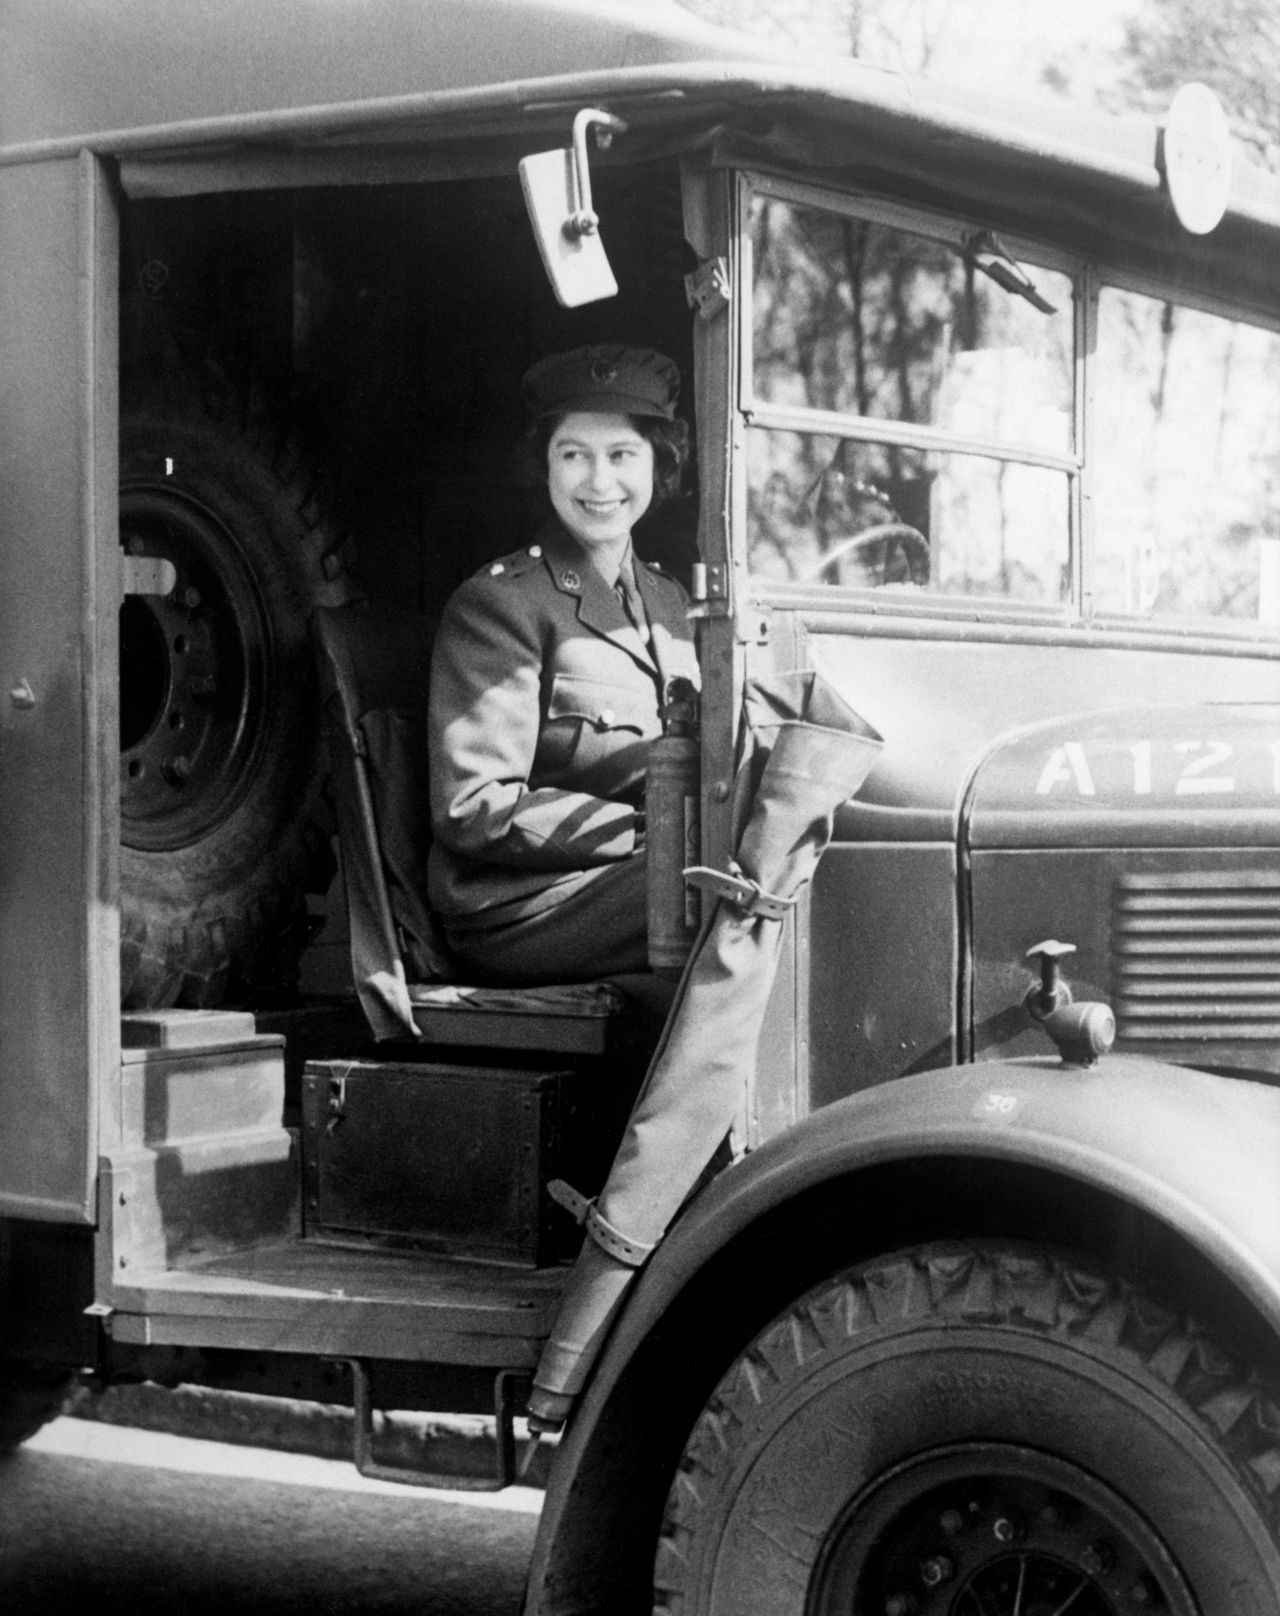 Während ihr Vater in Zeiten des Zweiten Weltkriegs viel unterwegs war, verbrachte Elizabeth diese Zeit in den schützenden Mauern von Schloss Windsor. Tatenlos herumsitzen wollte sie aber nicht. So schloss sie sich 1945 mit 18 Jahren der Frauen-Armee an. Sie lernte LKW-Fahren, ließ sich als Automechanikerin ausbilden, wechselte Reifen und machte sich die Hände schmutzig.